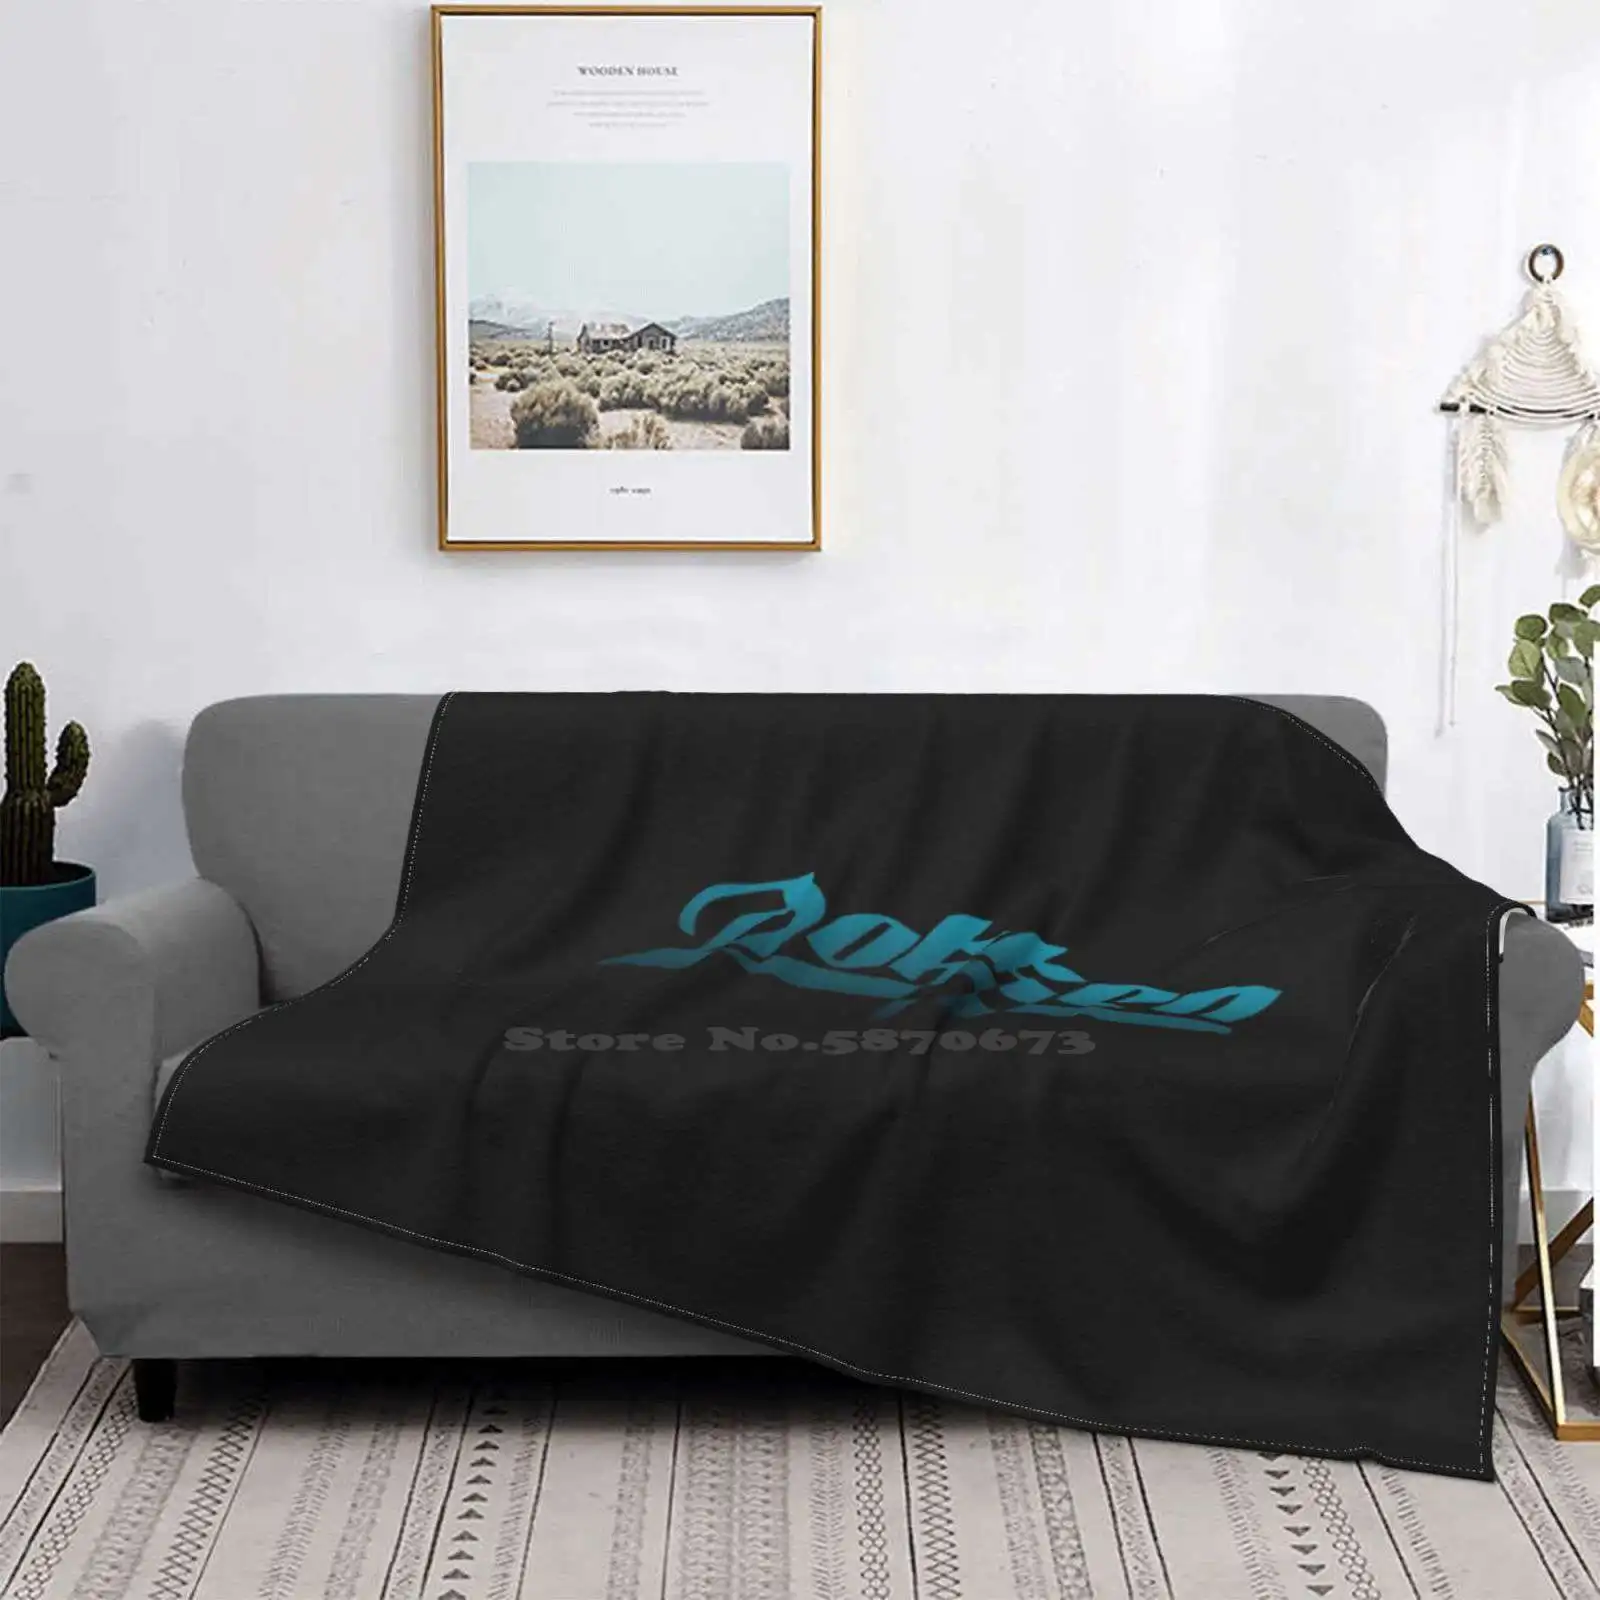 

Одеяло с логотипом Dokken Four Seasons, удобное теплое мягкое одеяло Doken 80, металлические волосы, металл, тяжелый металл, жесткое металлическое одеял...